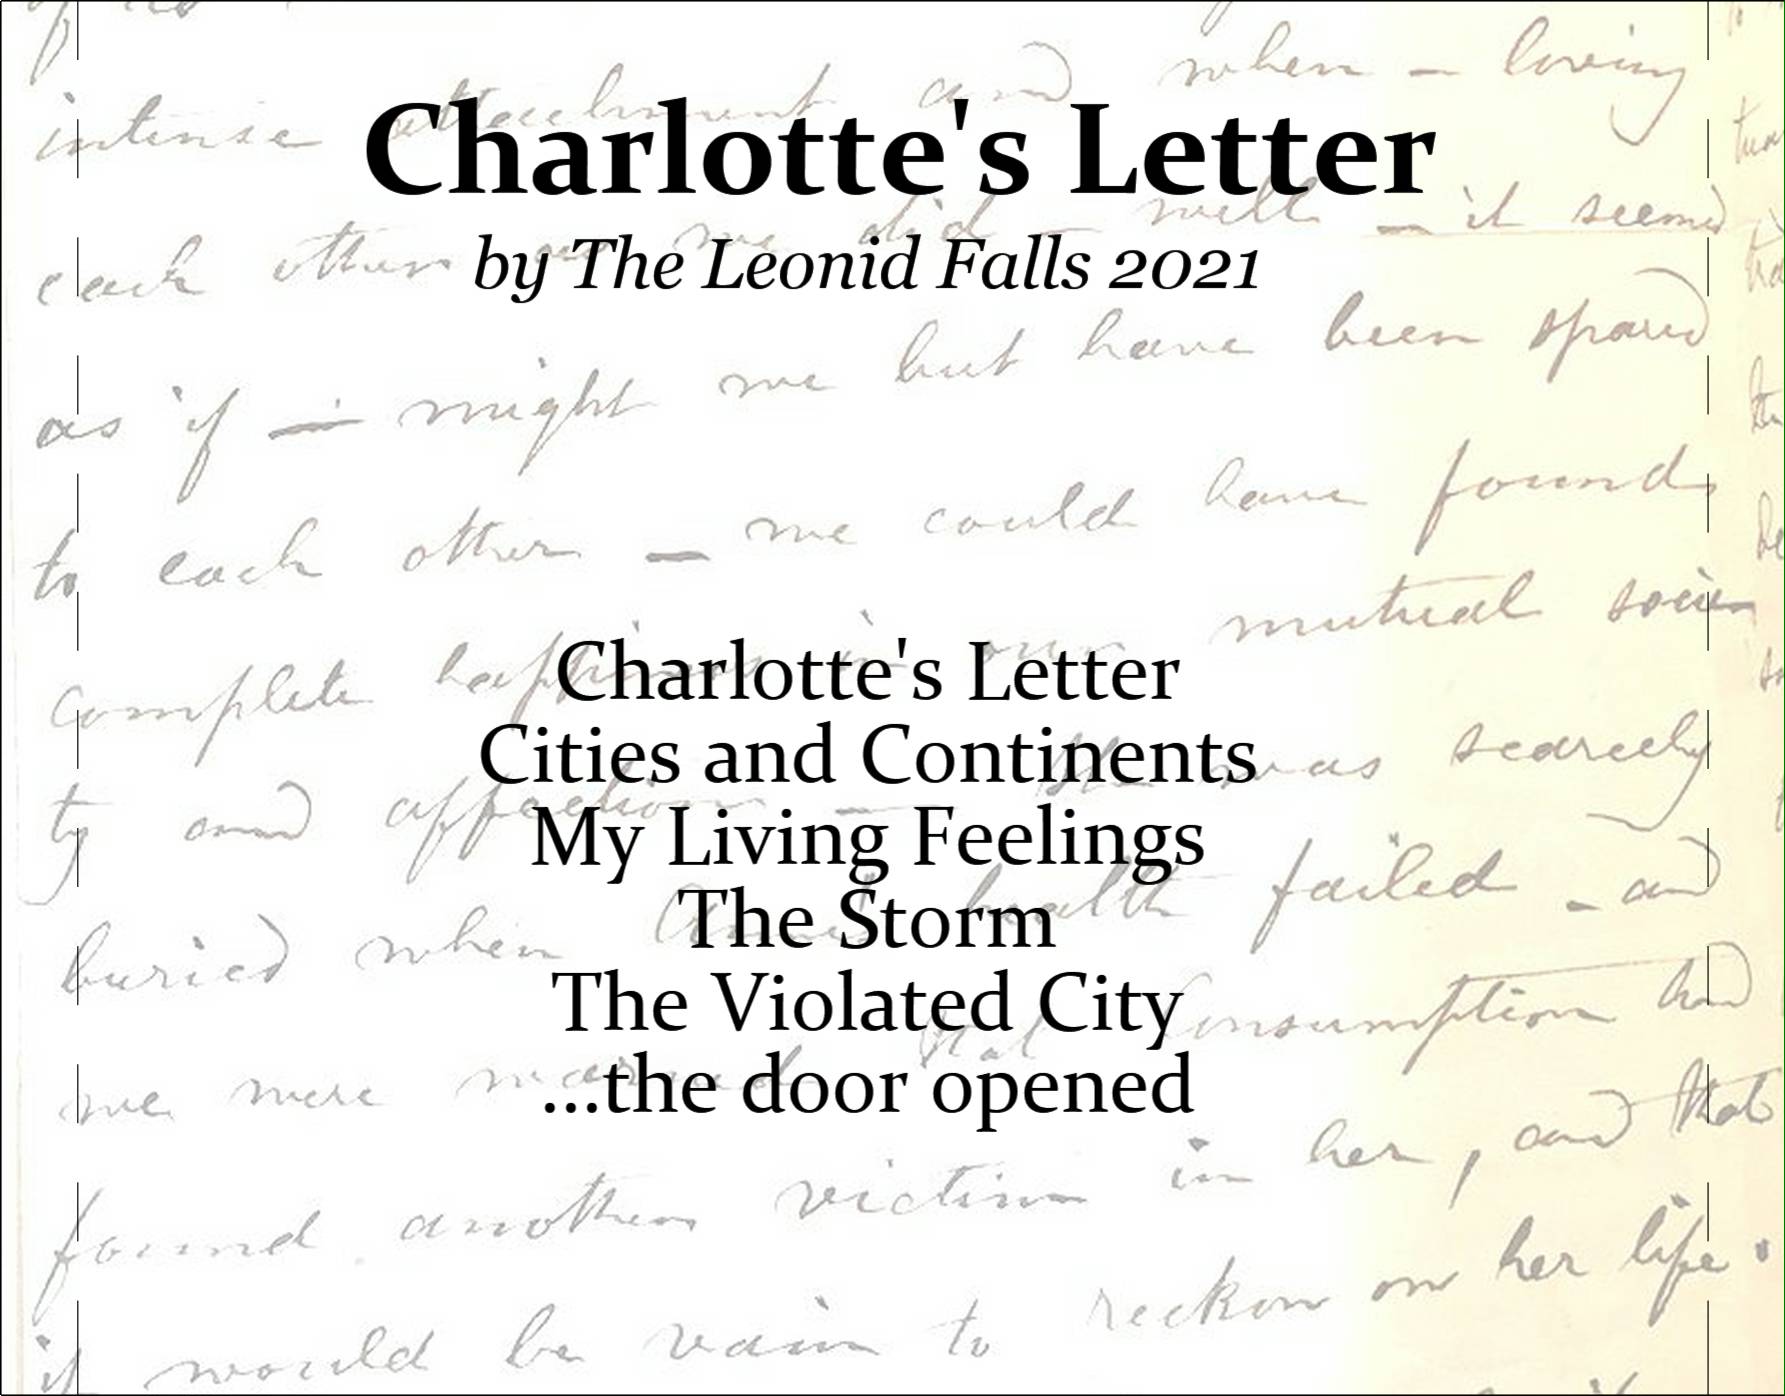 Charlotte's Letter back